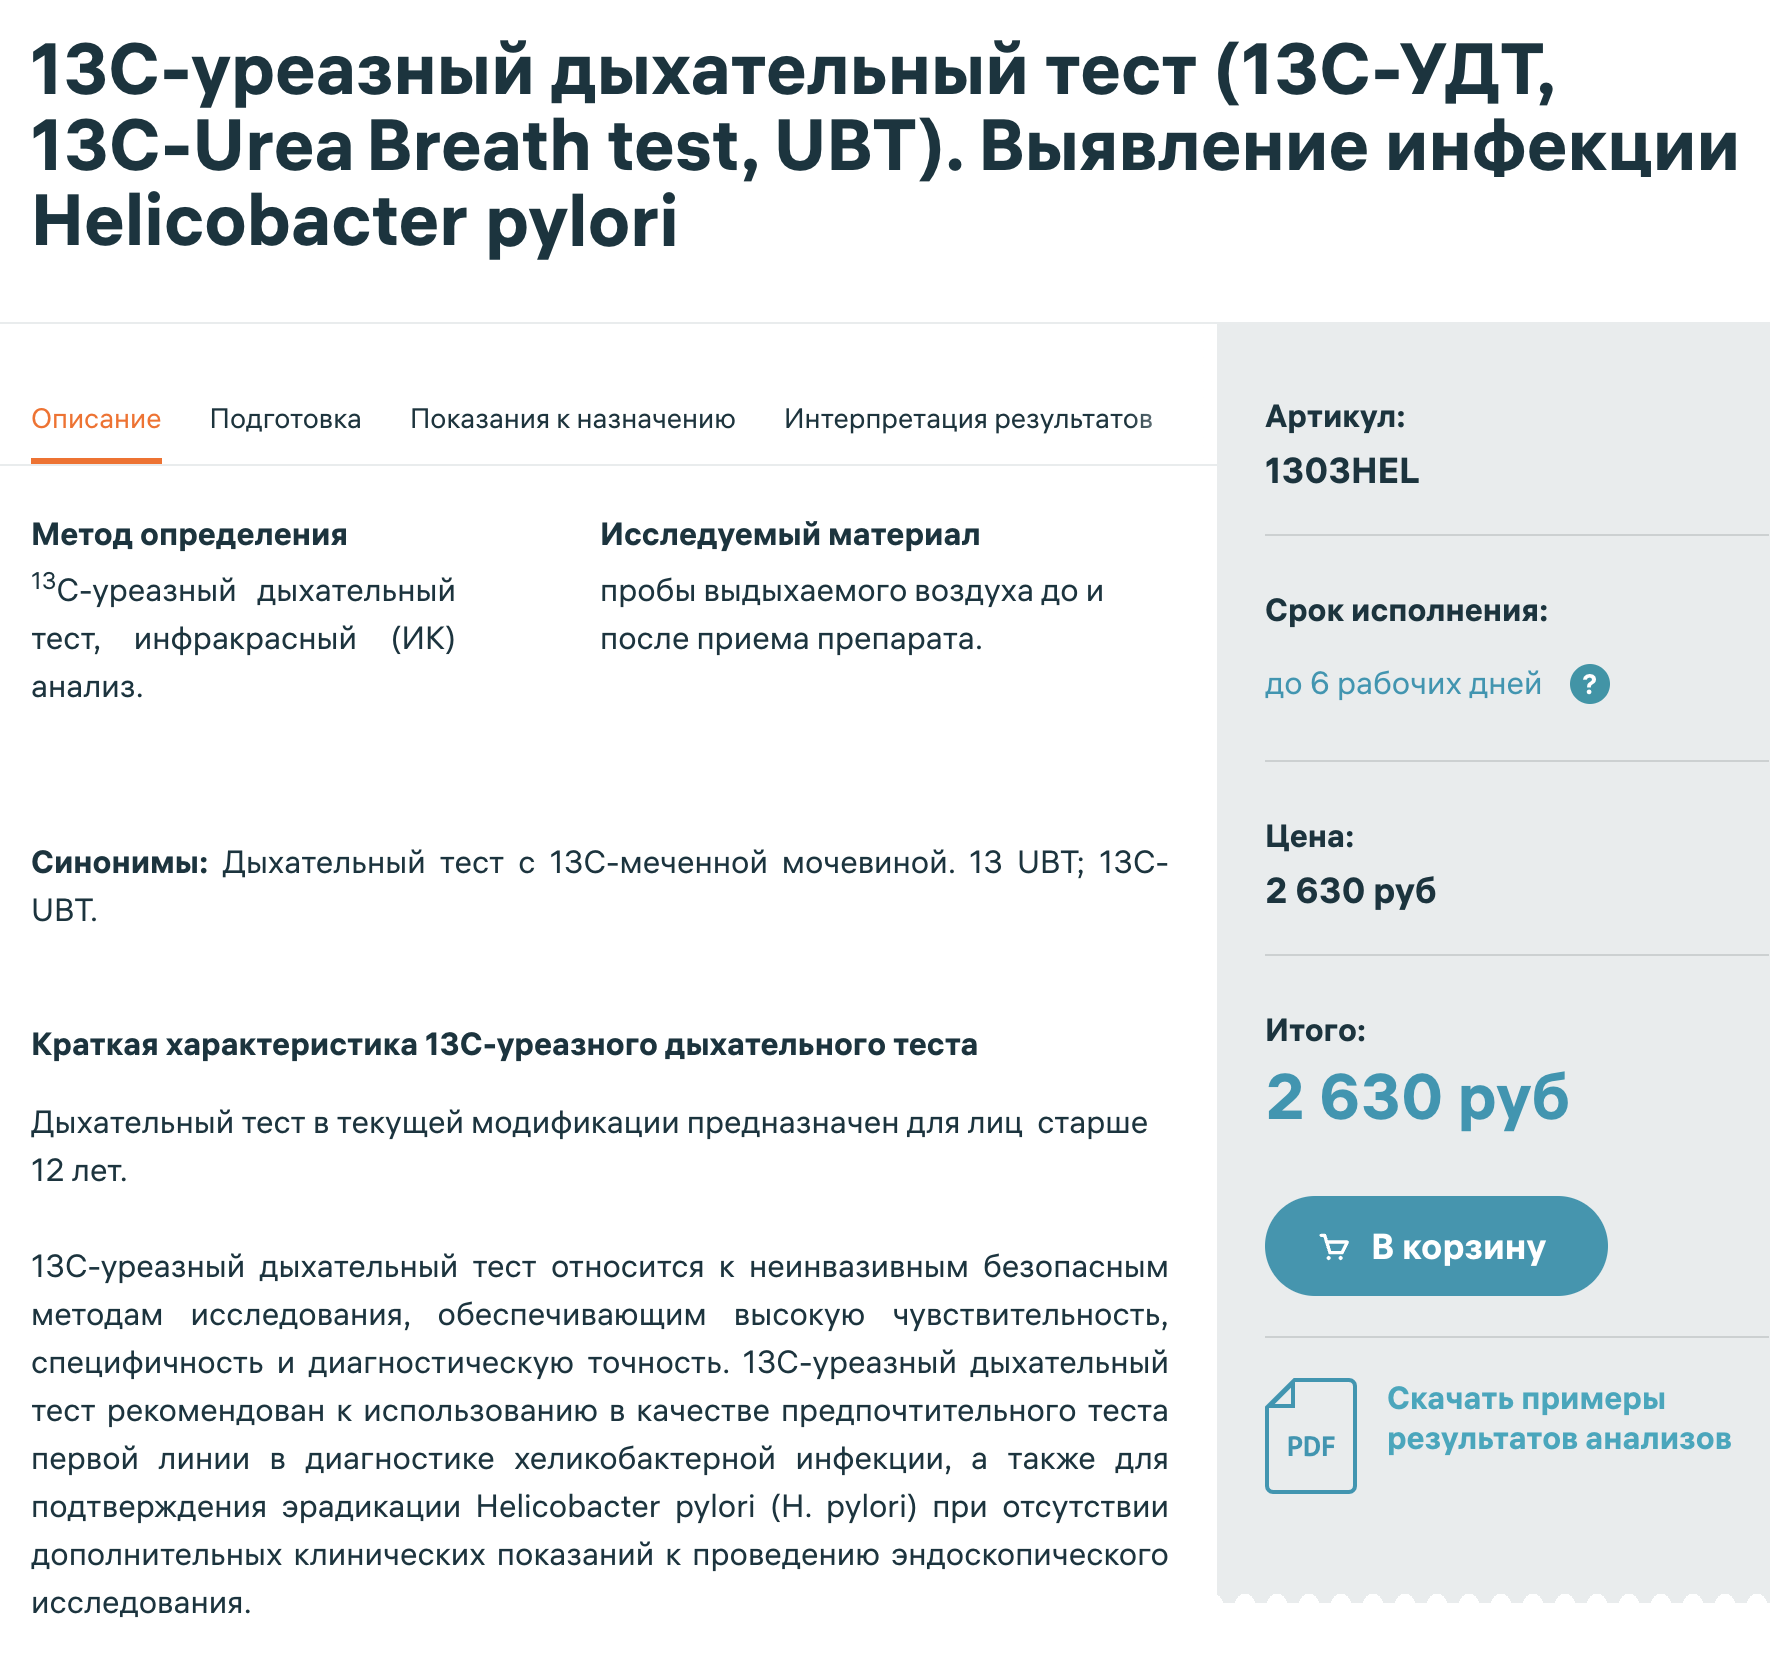 В частных лабораториях дыхательный тест на хеликобактер пилори стоит от 2500 ₽. Источник: invitro.ru